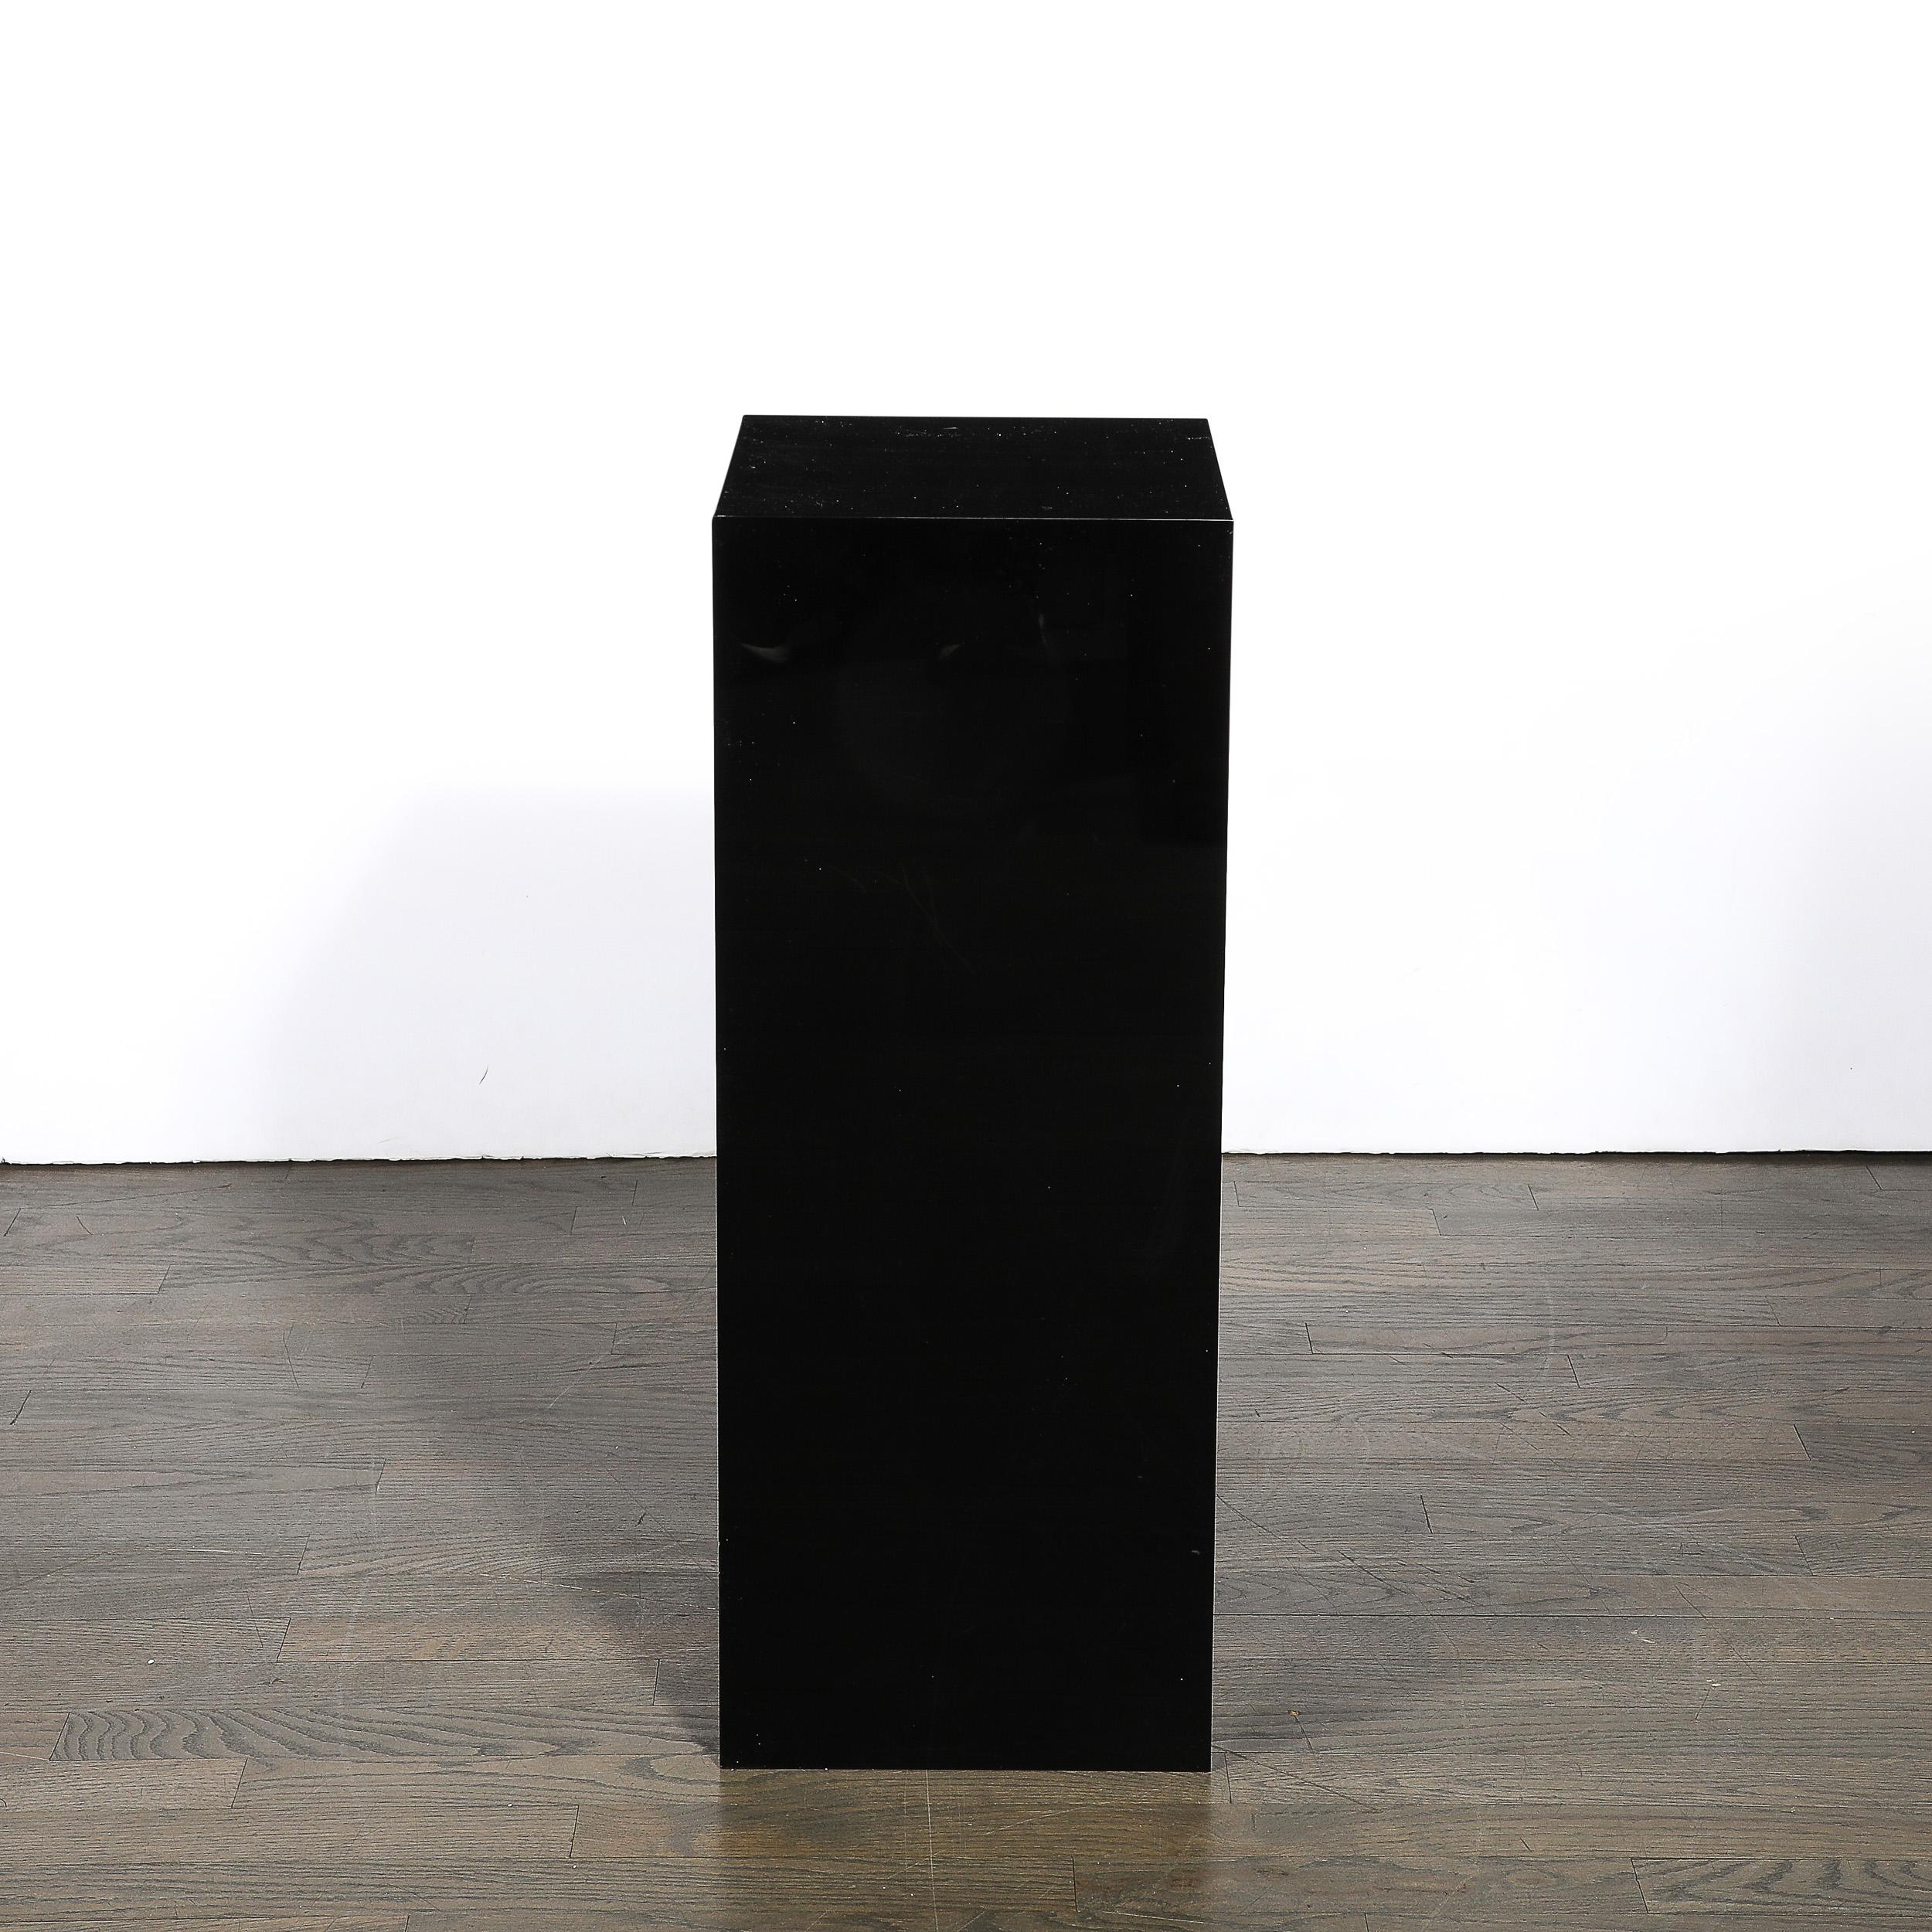 Ce piédestal rectiligne en acrylique noir de style moderniste du milieu du siècle est originaire des États-Unis et date de la seconde moitié du XXe siècle. Cette pièce présente une composition rectiligne en acrylique noir brillant, un matériau